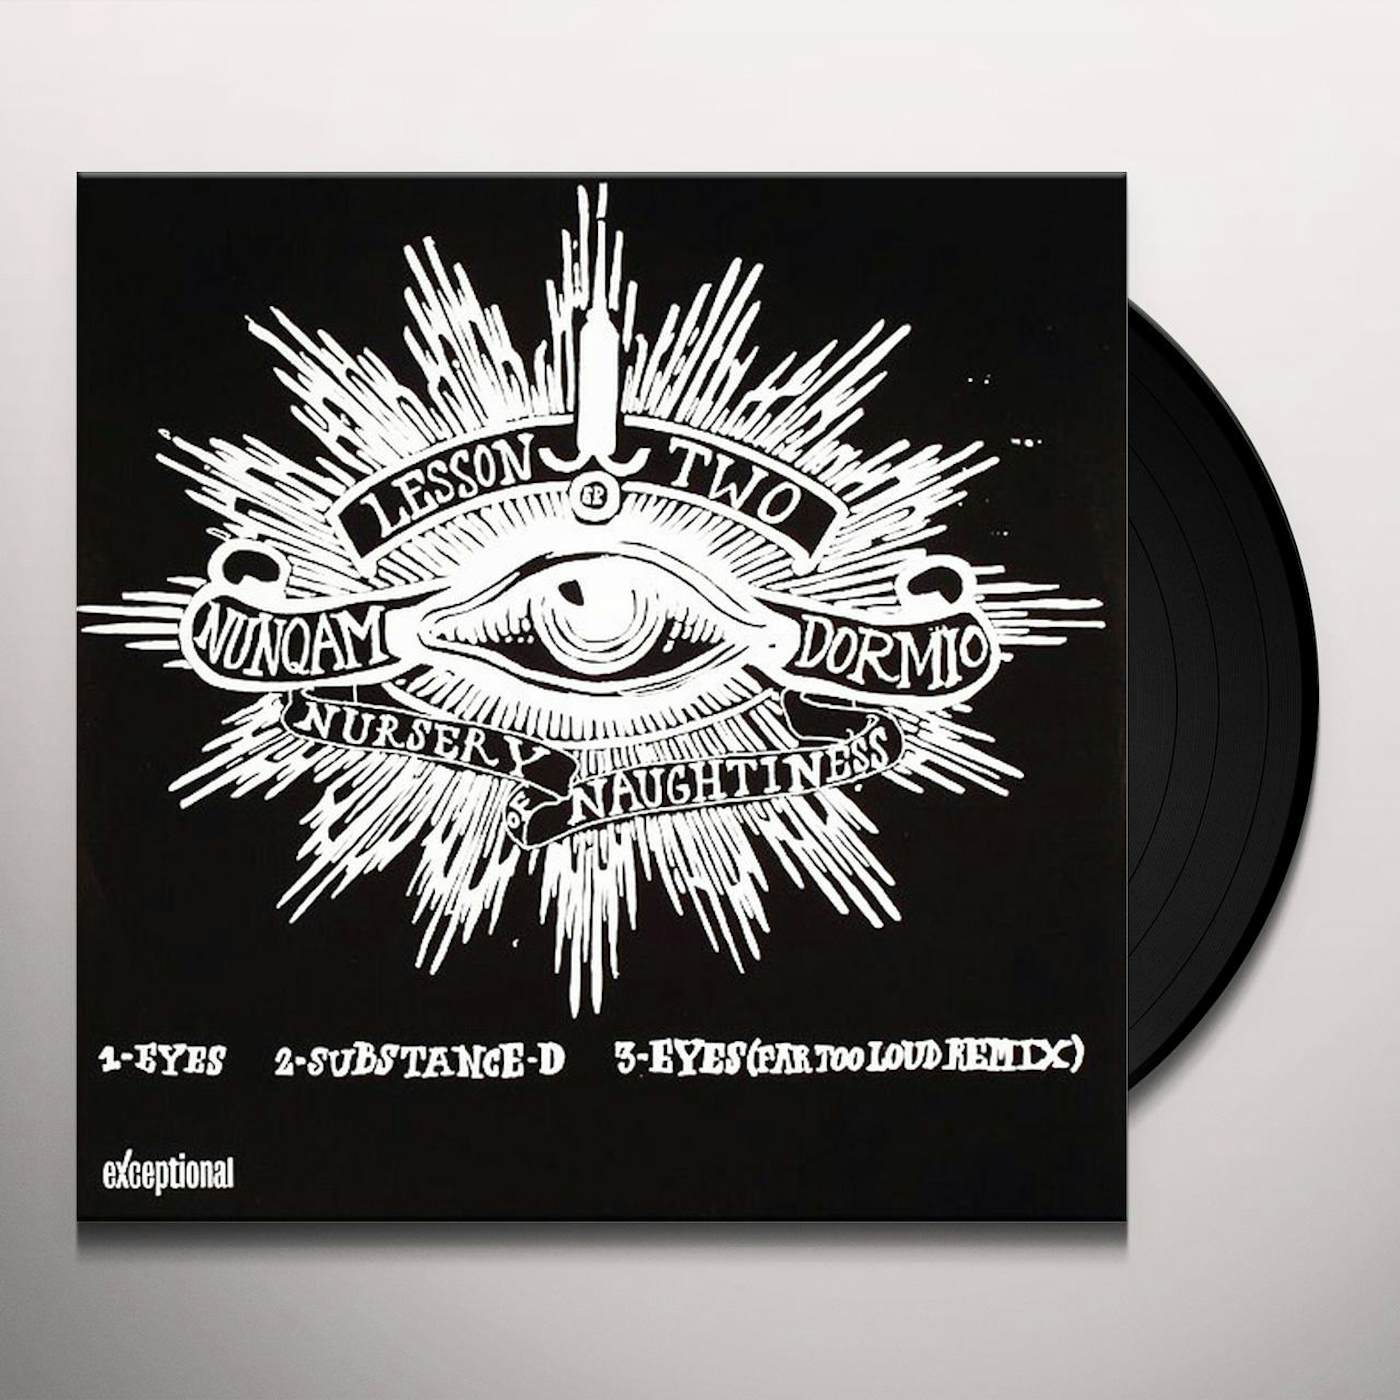 Nursery of naughtiness EYES Vinyl Record - UK Release